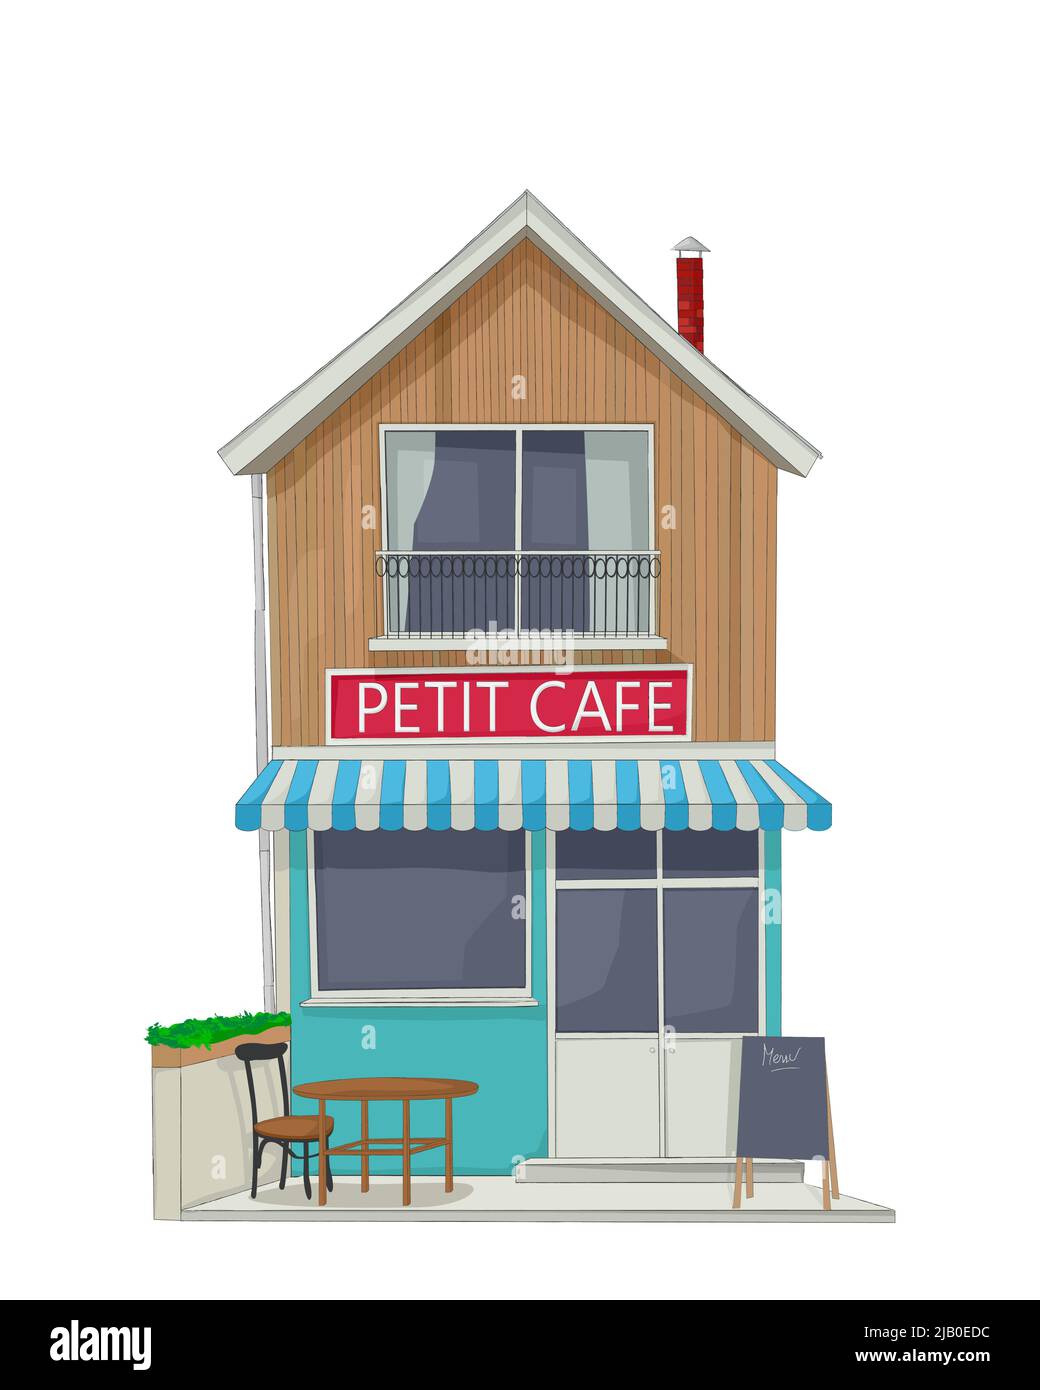 Vue sur la rue d'un petit café de rue de ville avec terrasse, menu, table et chaise, croquis vectoriel Illustration de Vecteur